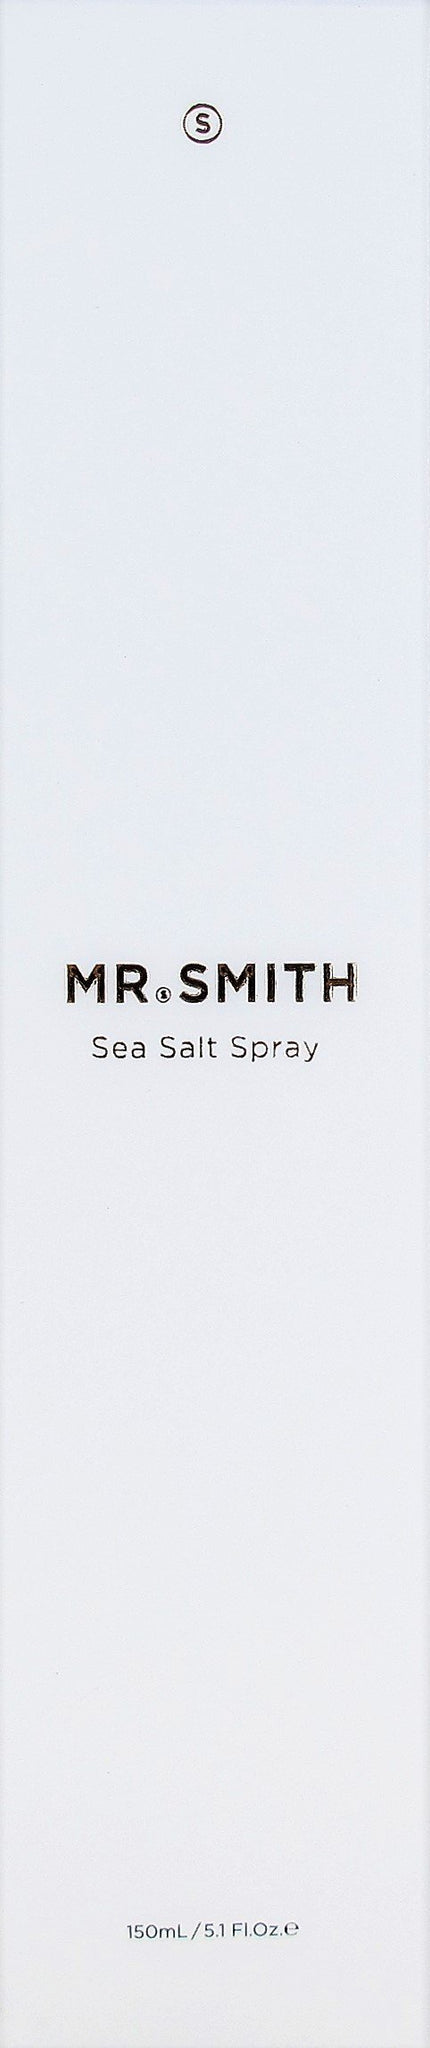 Mr. Smith Sea Salt Spray 5.1 oz